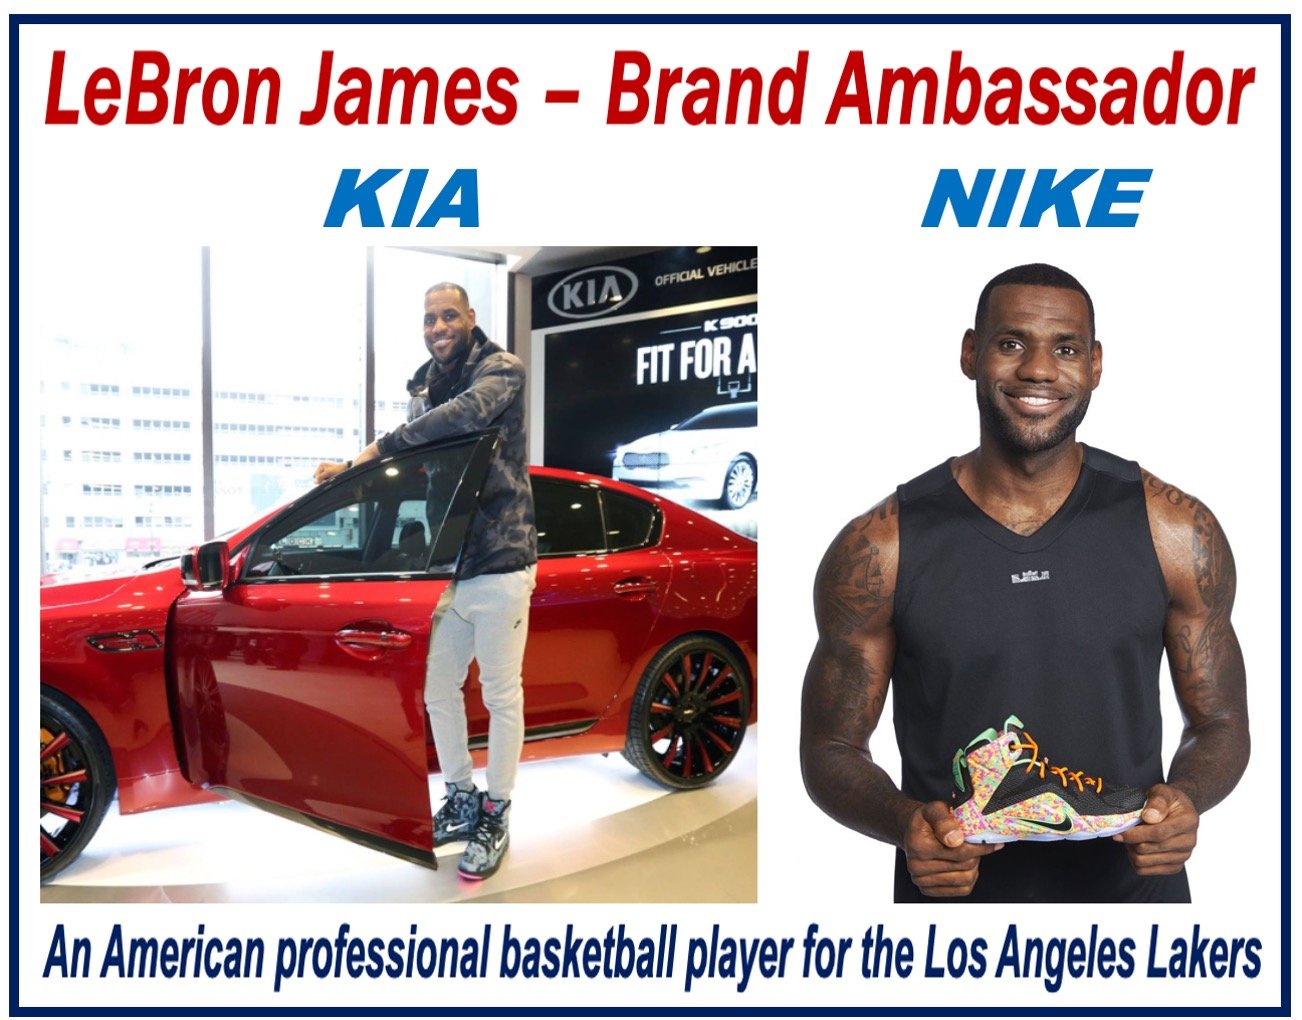 LeBron James - Brand Ambassador